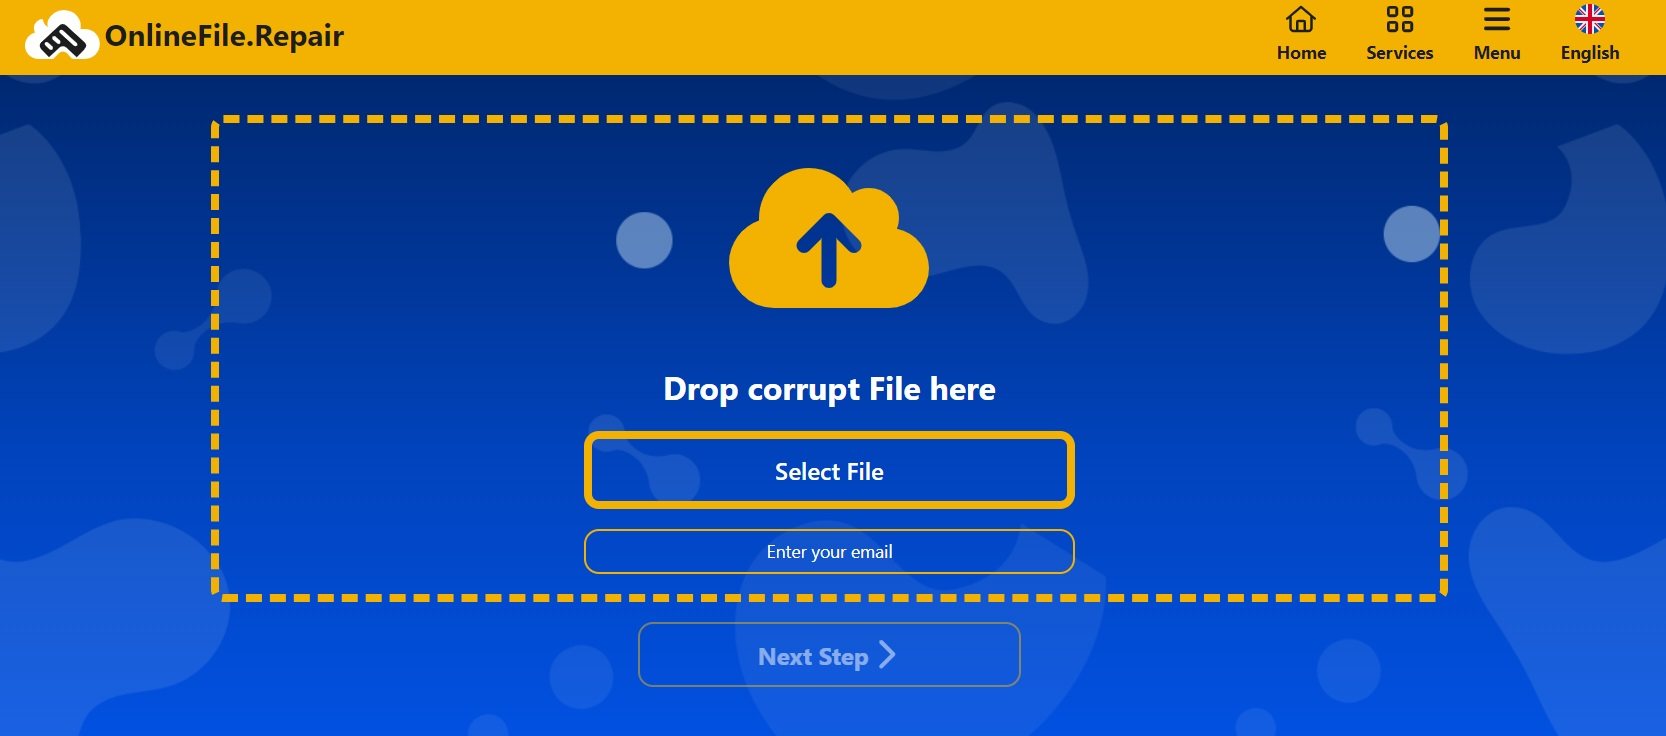 online file repair tool 